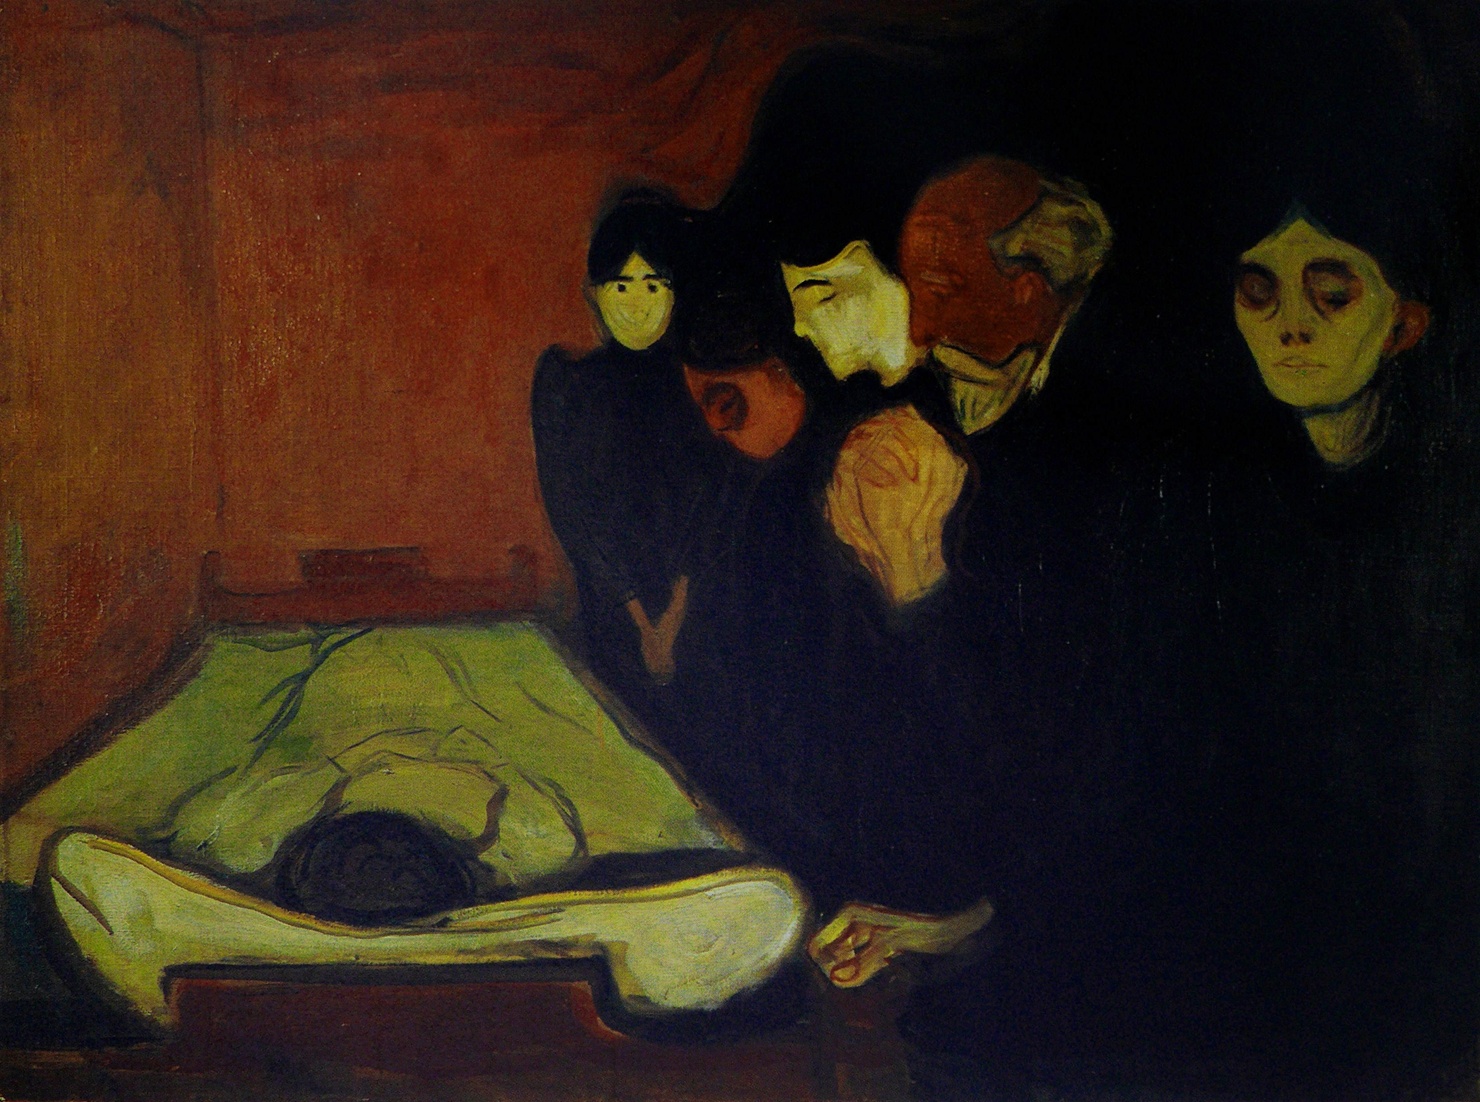 臨終前 (發燒) by Edvard Munch - 1893 - 60 x 80 釐米 